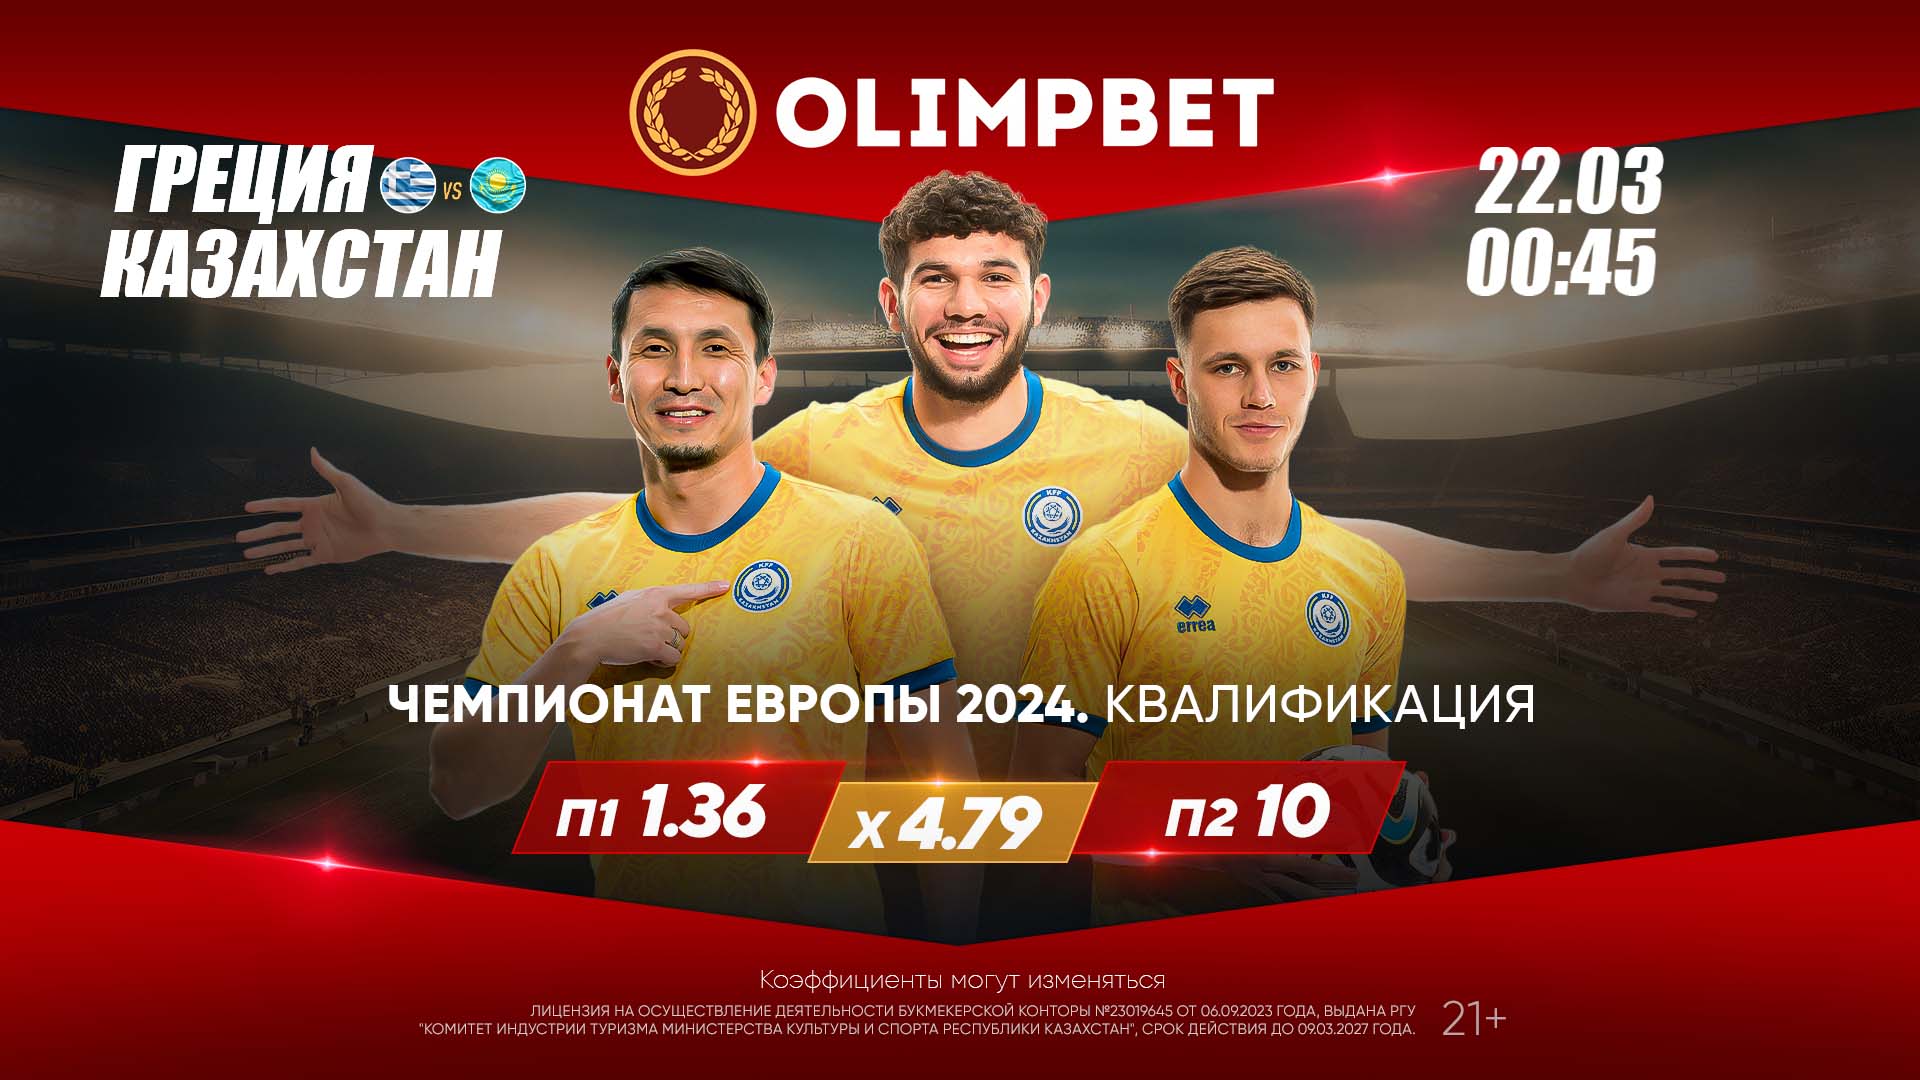 Девять к одному: букмекер Olimpbet дает коэффициент на победу Казахстана в матче с Грецией